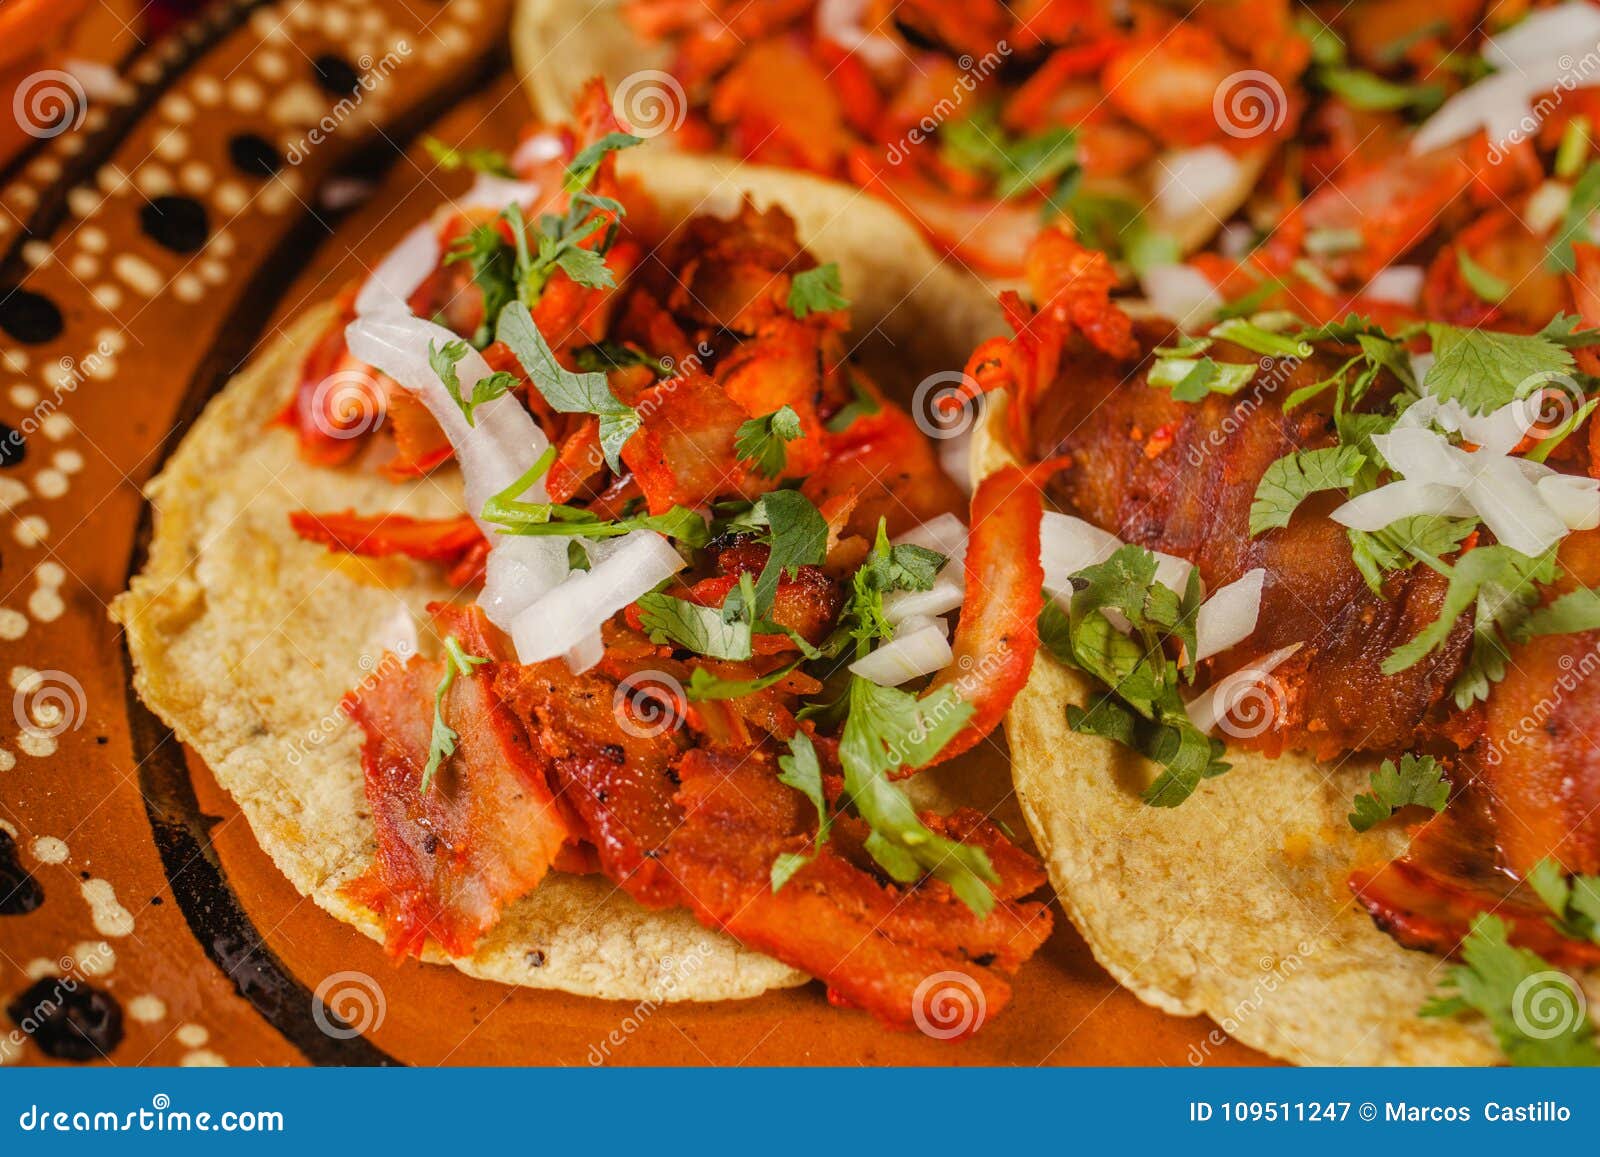 tacos al pastor mexican spicy food in mexico city